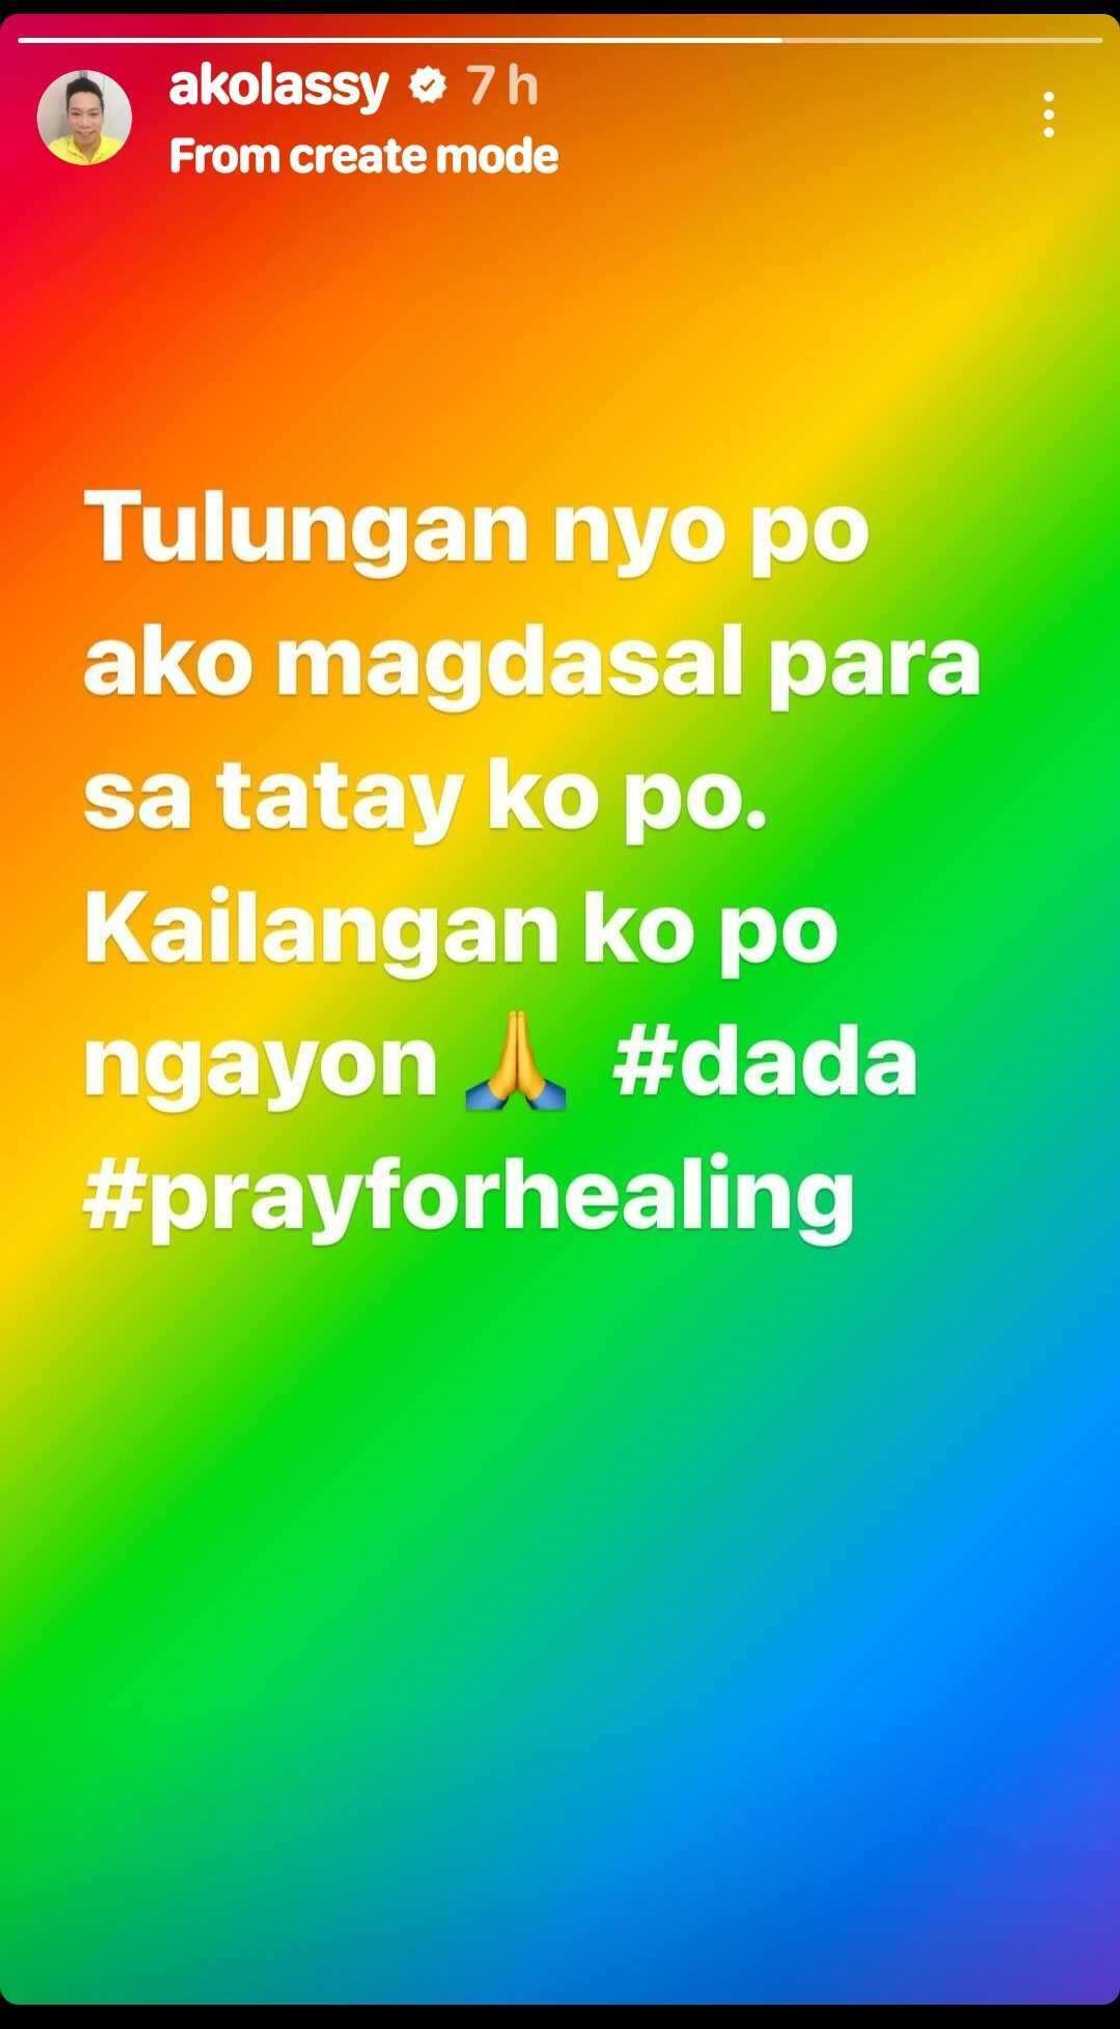 Lassy, humiling ng panalangin para sa ama: “Pray for healing”